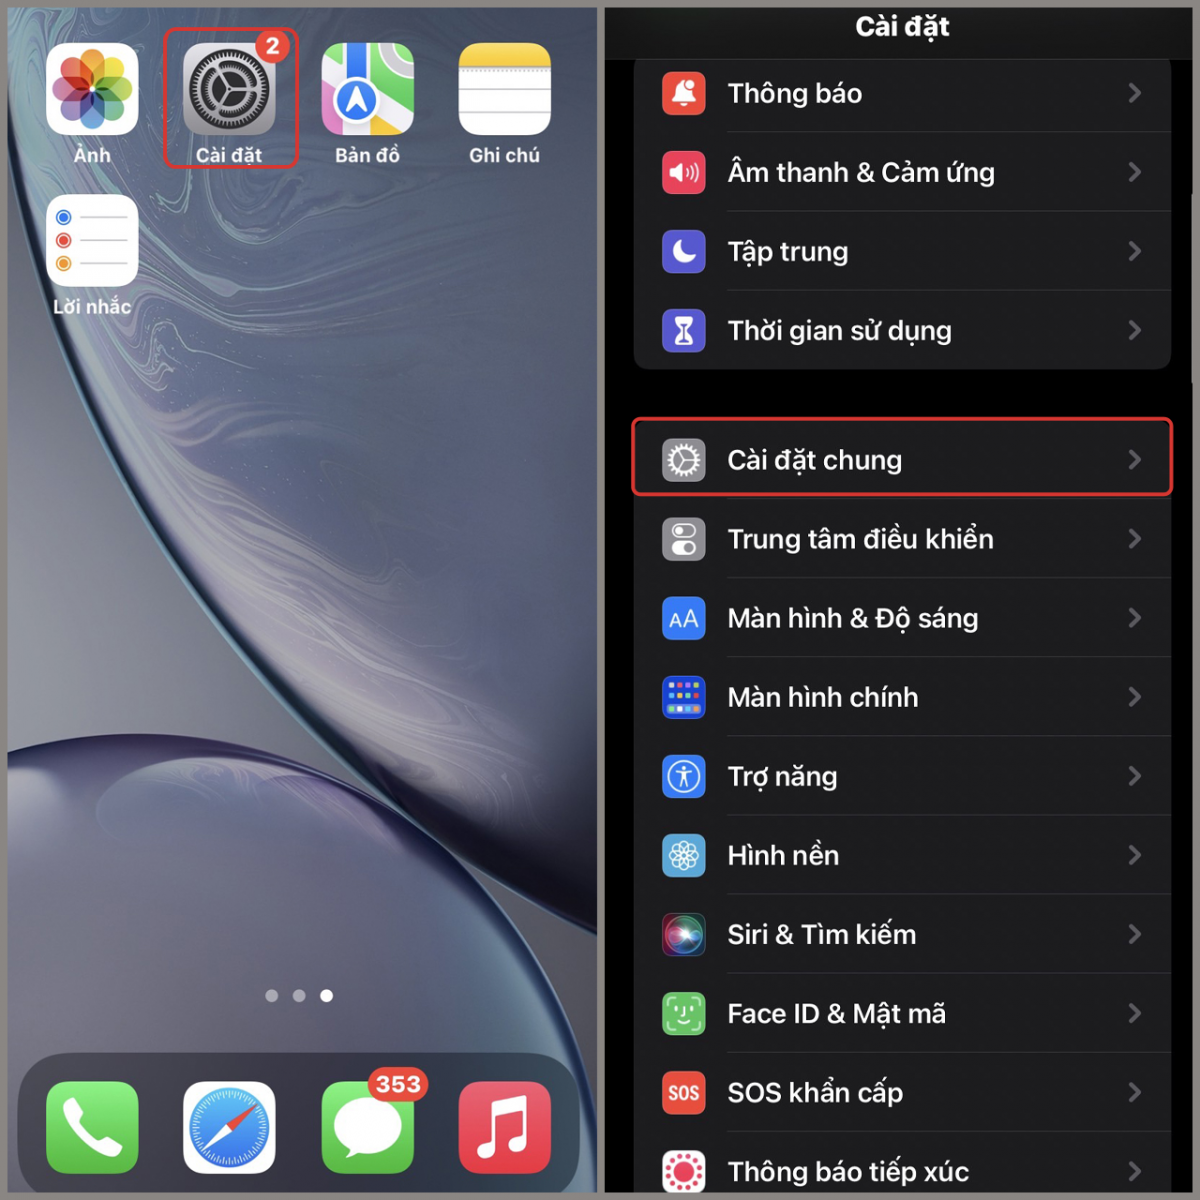 iOS 15 Có Hao Pin Không? Cách Khắc Phục Như Thế Nào?